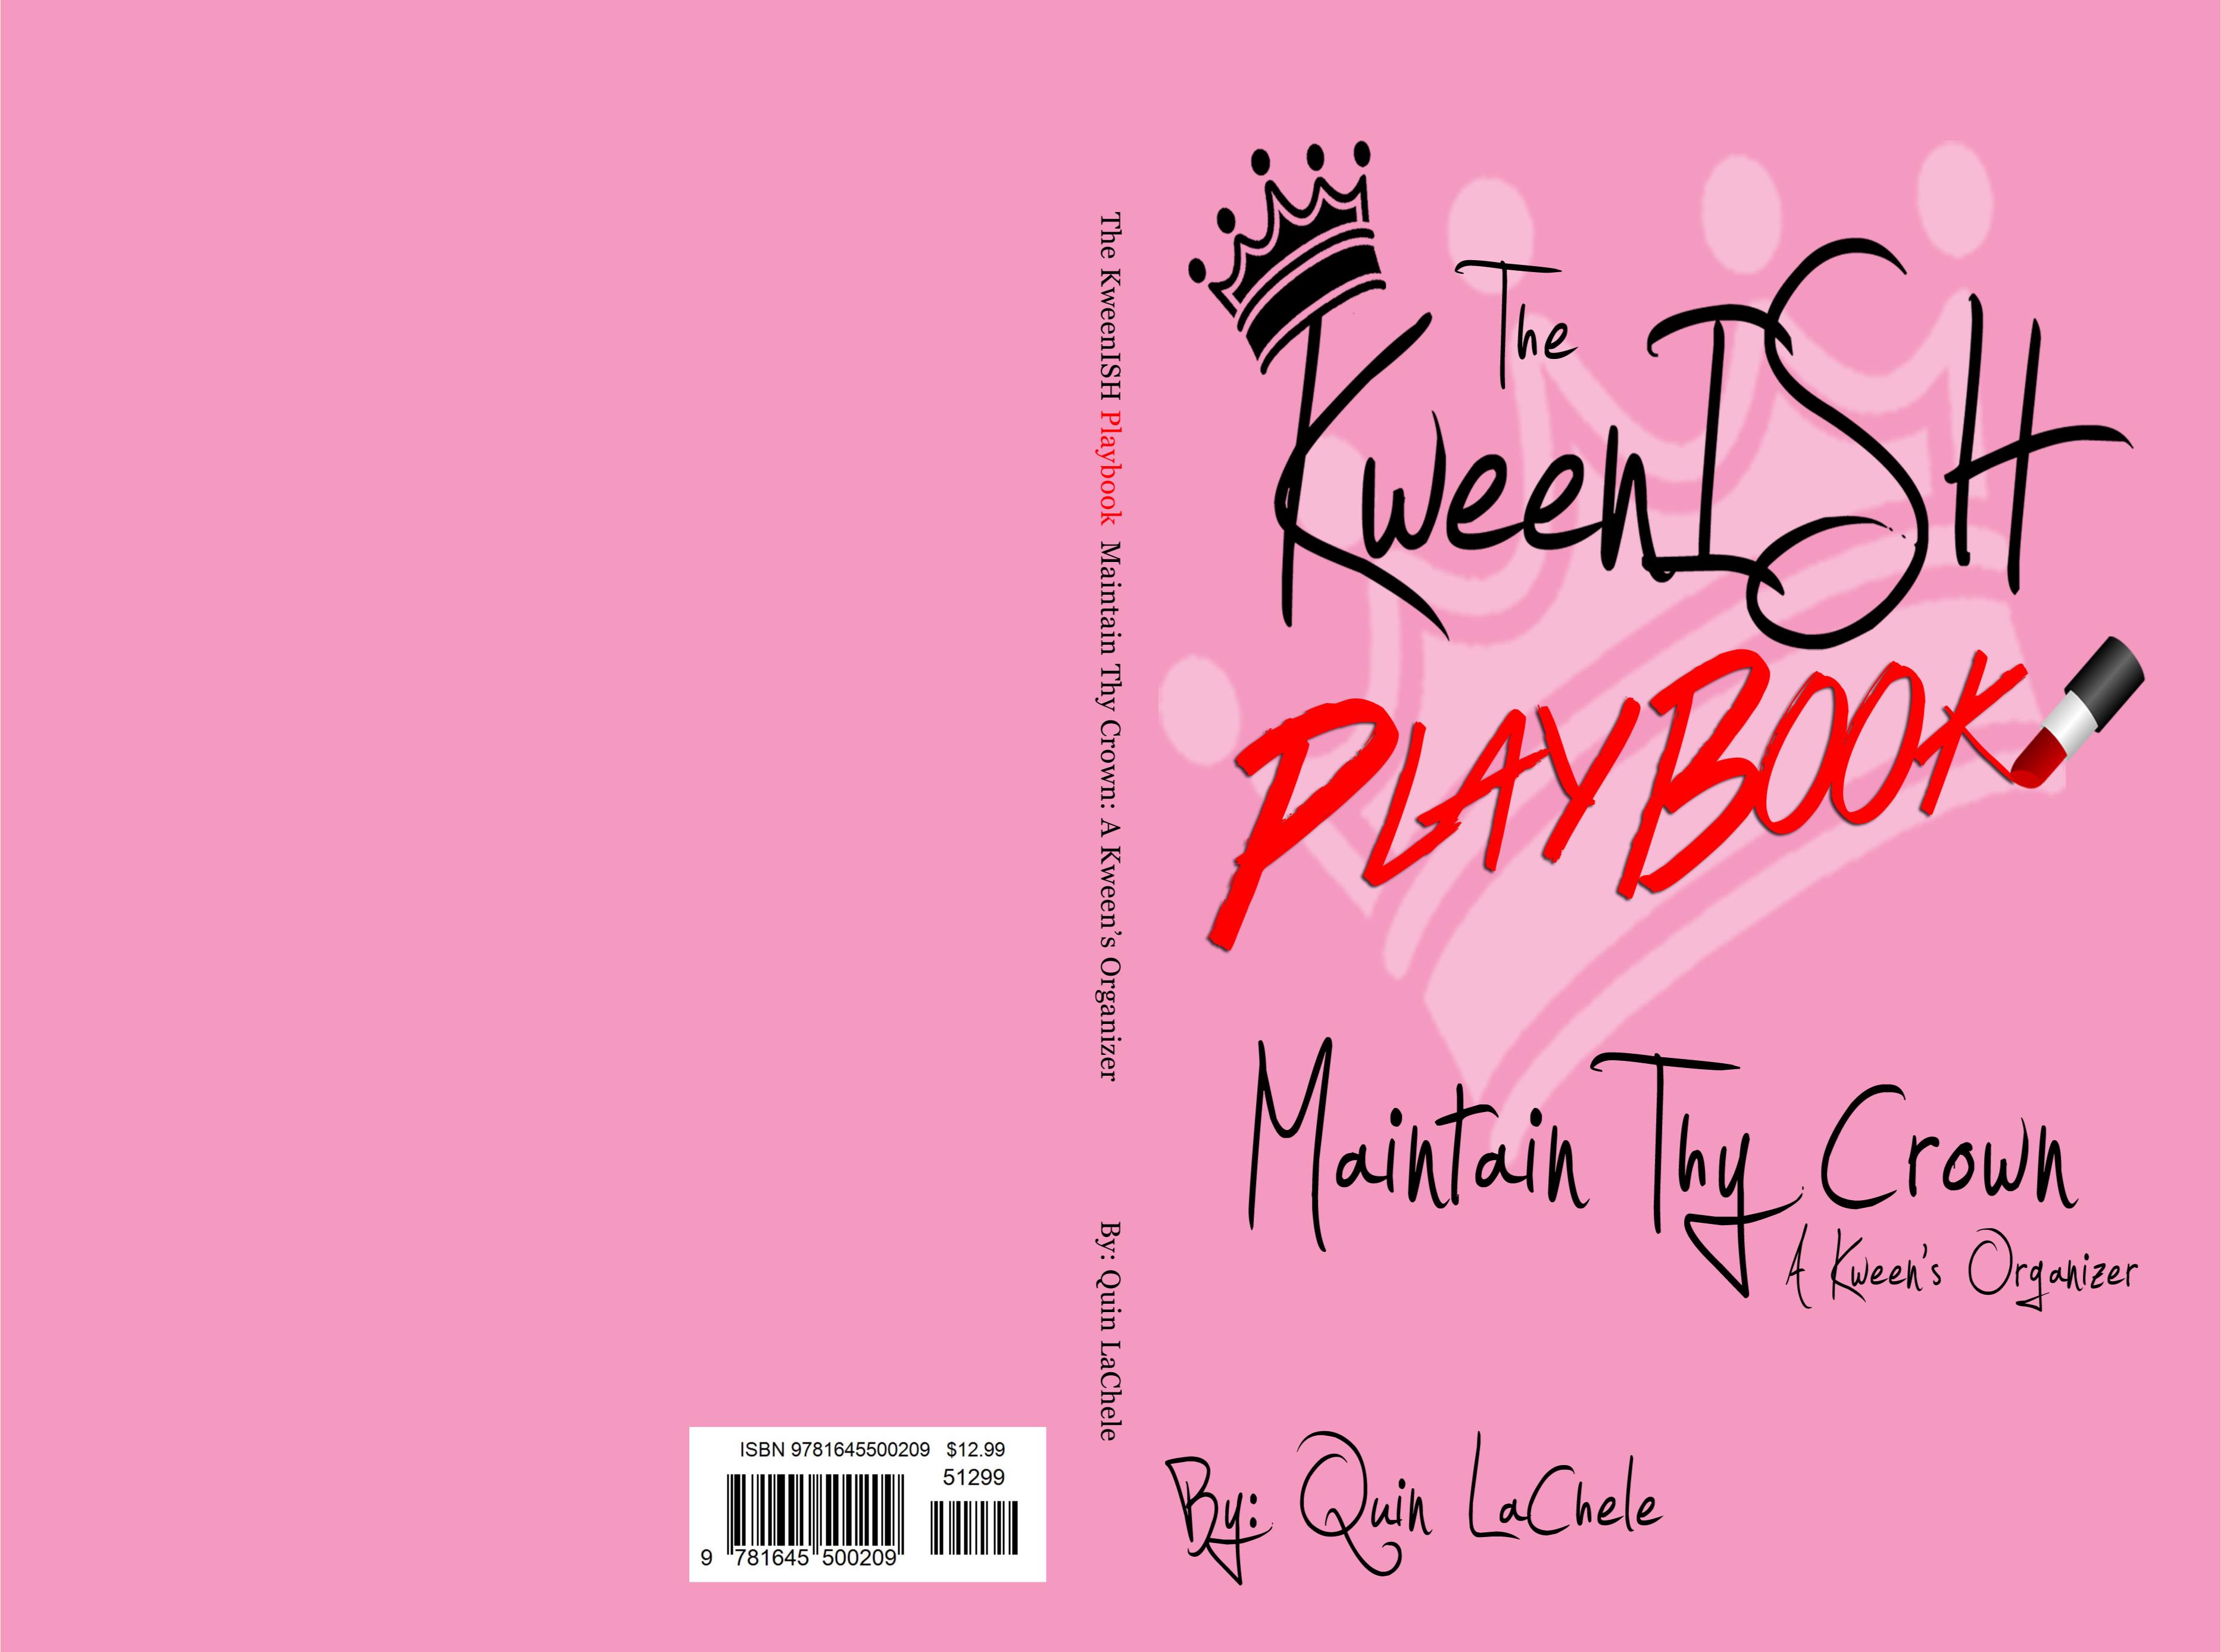 The KweenISH Playbook cover image